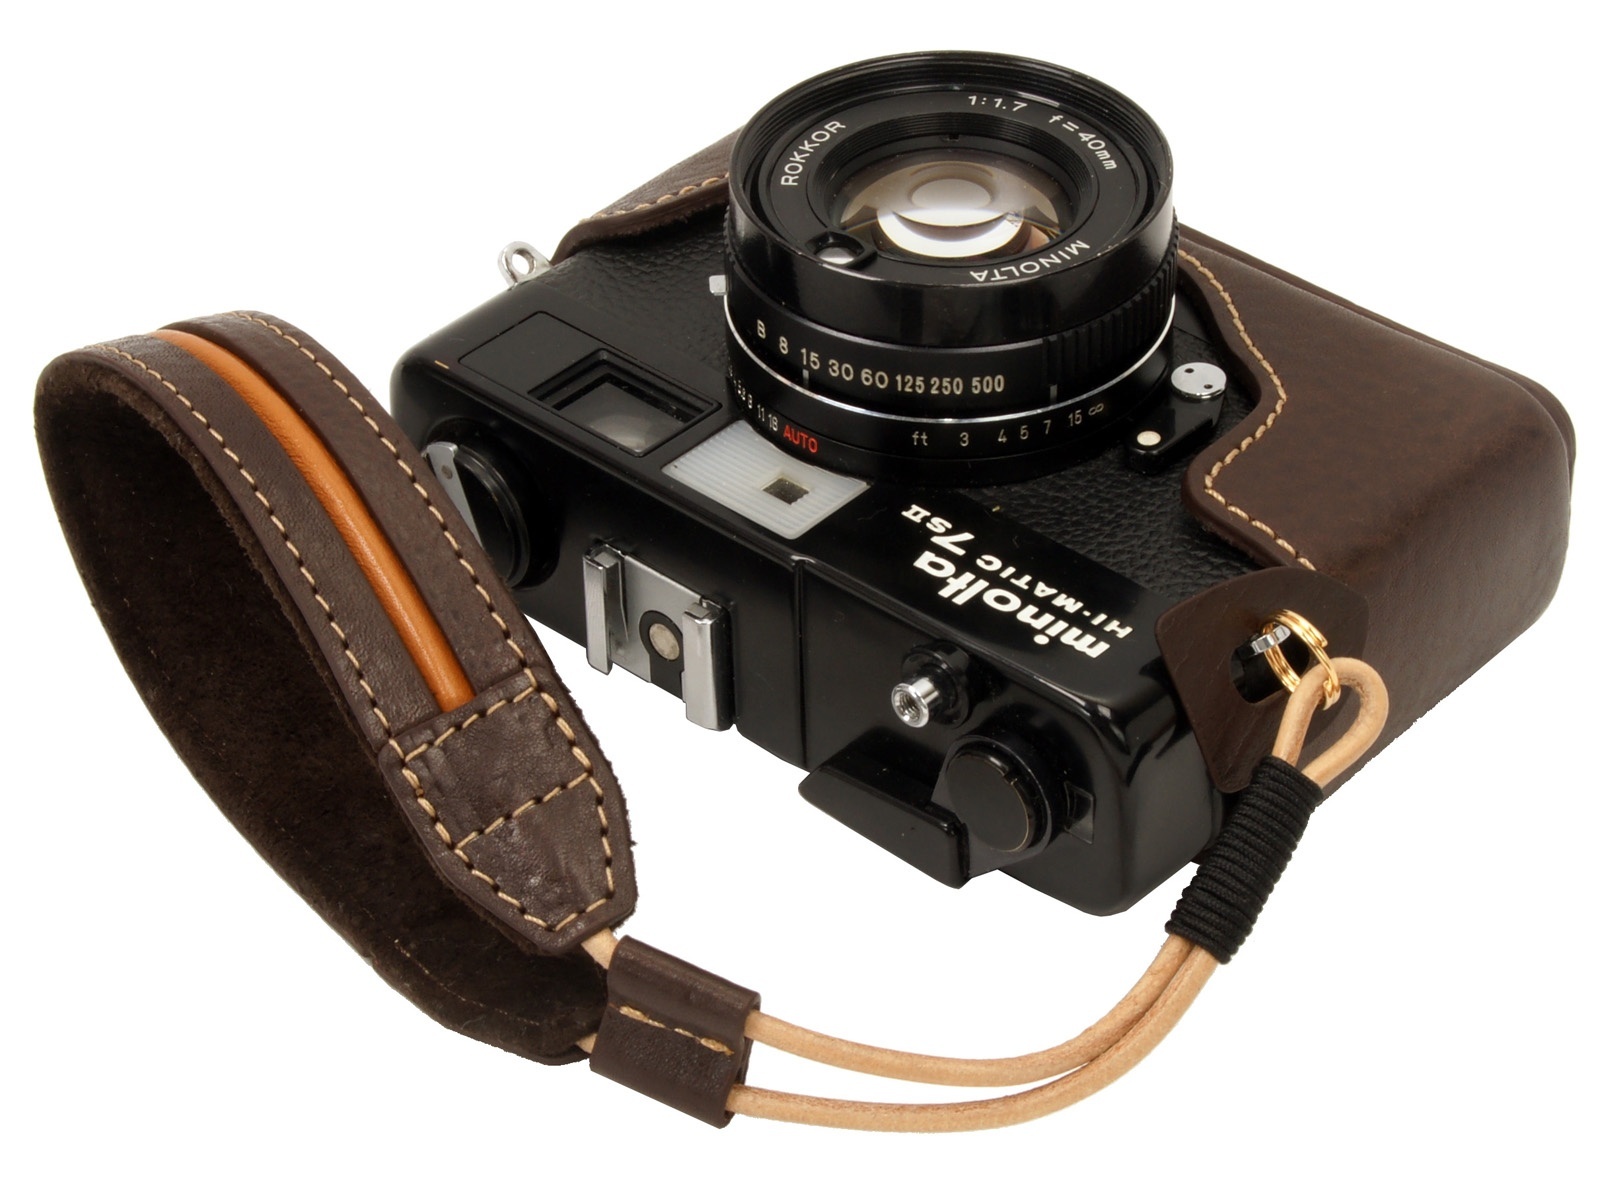 【クリックで詳細表示】ミノルタ ハイマチック 7sII用 本革カメラ ケース with ストラップ Dark Brown / ダークブラウン / Minolta Hi-Matic 7s2 leather half-case